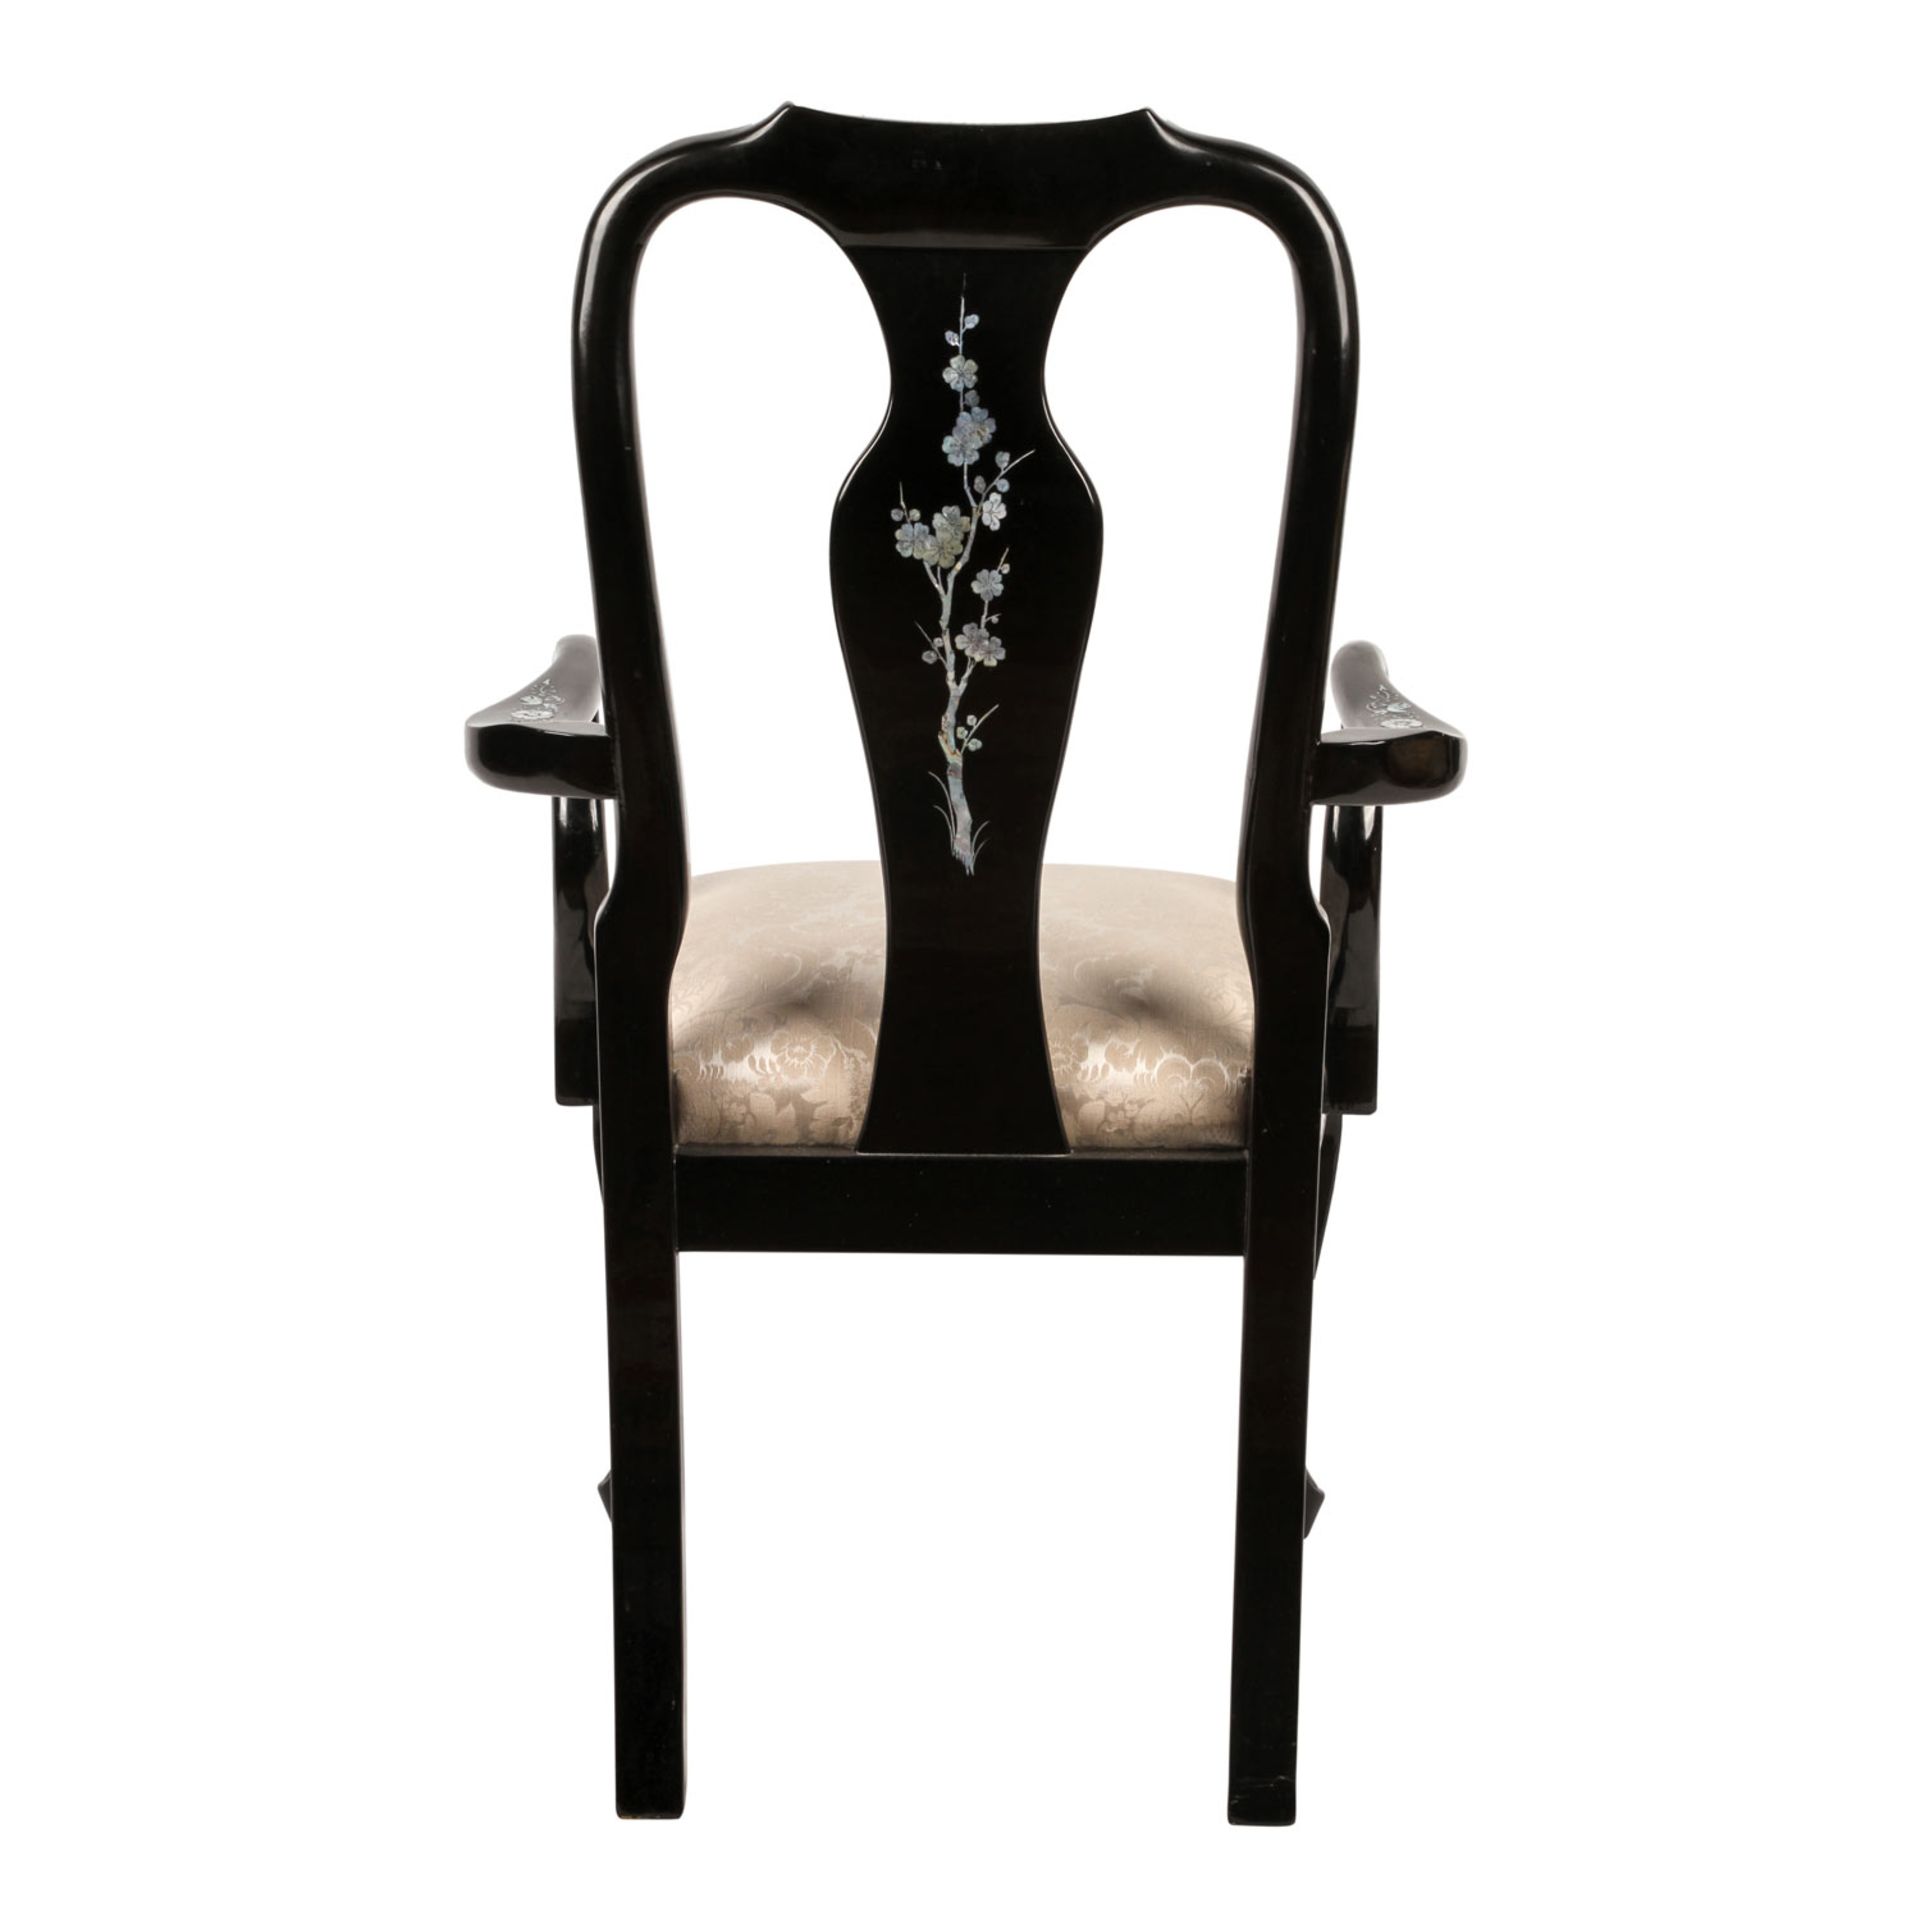 Schwarzlack-Stuhl. CHINA, 20. Jh.Holz, schwarz lackiert und mit Perlmuttintarsien verziert. - Image 4 of 6